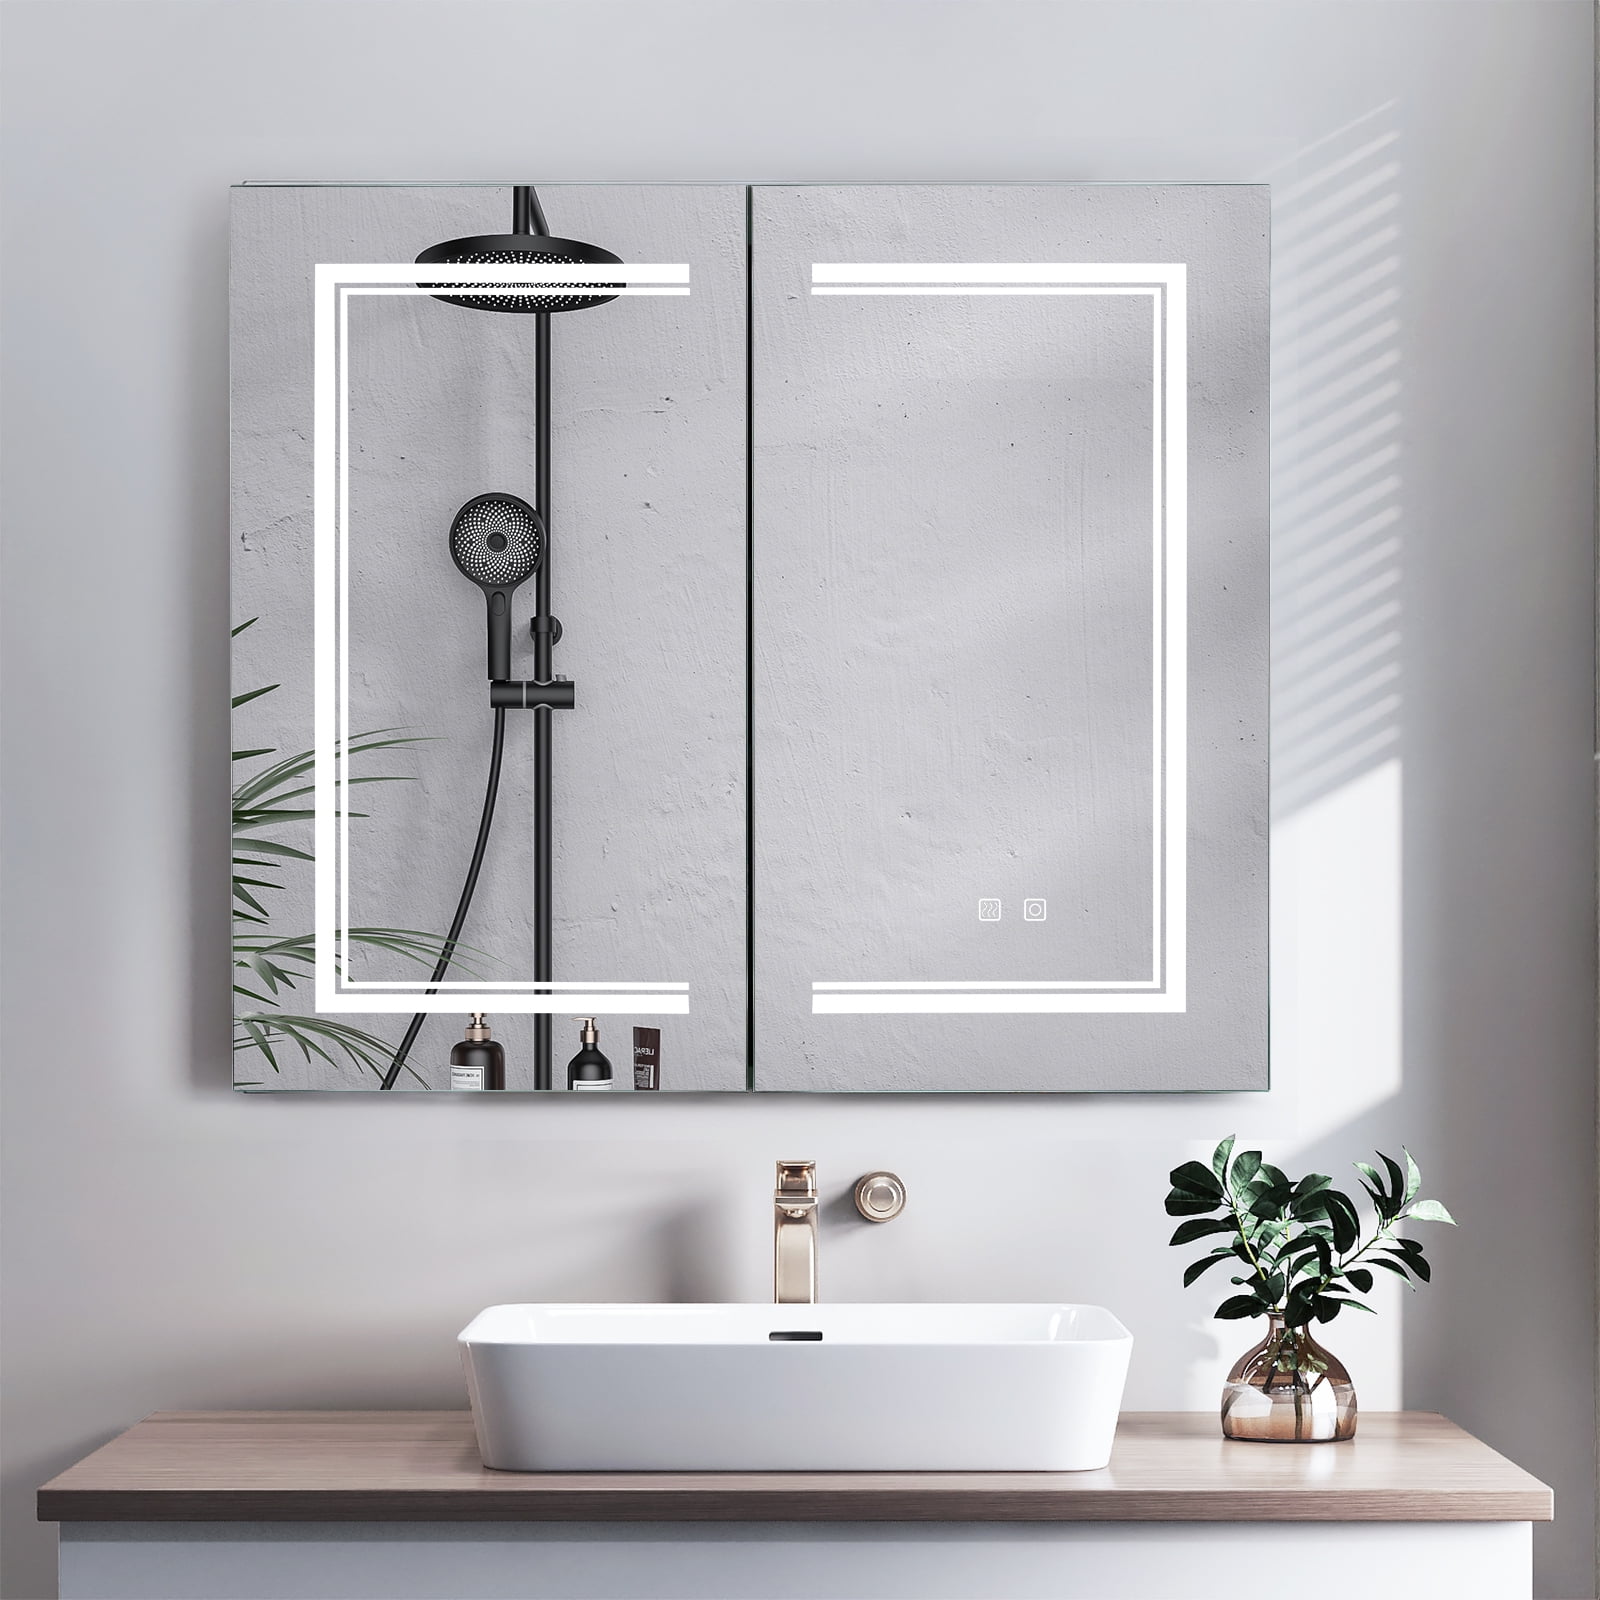 Ktaxon Anti-fog Wall Mounted Lighted Vanity Mirror LED Bathroom